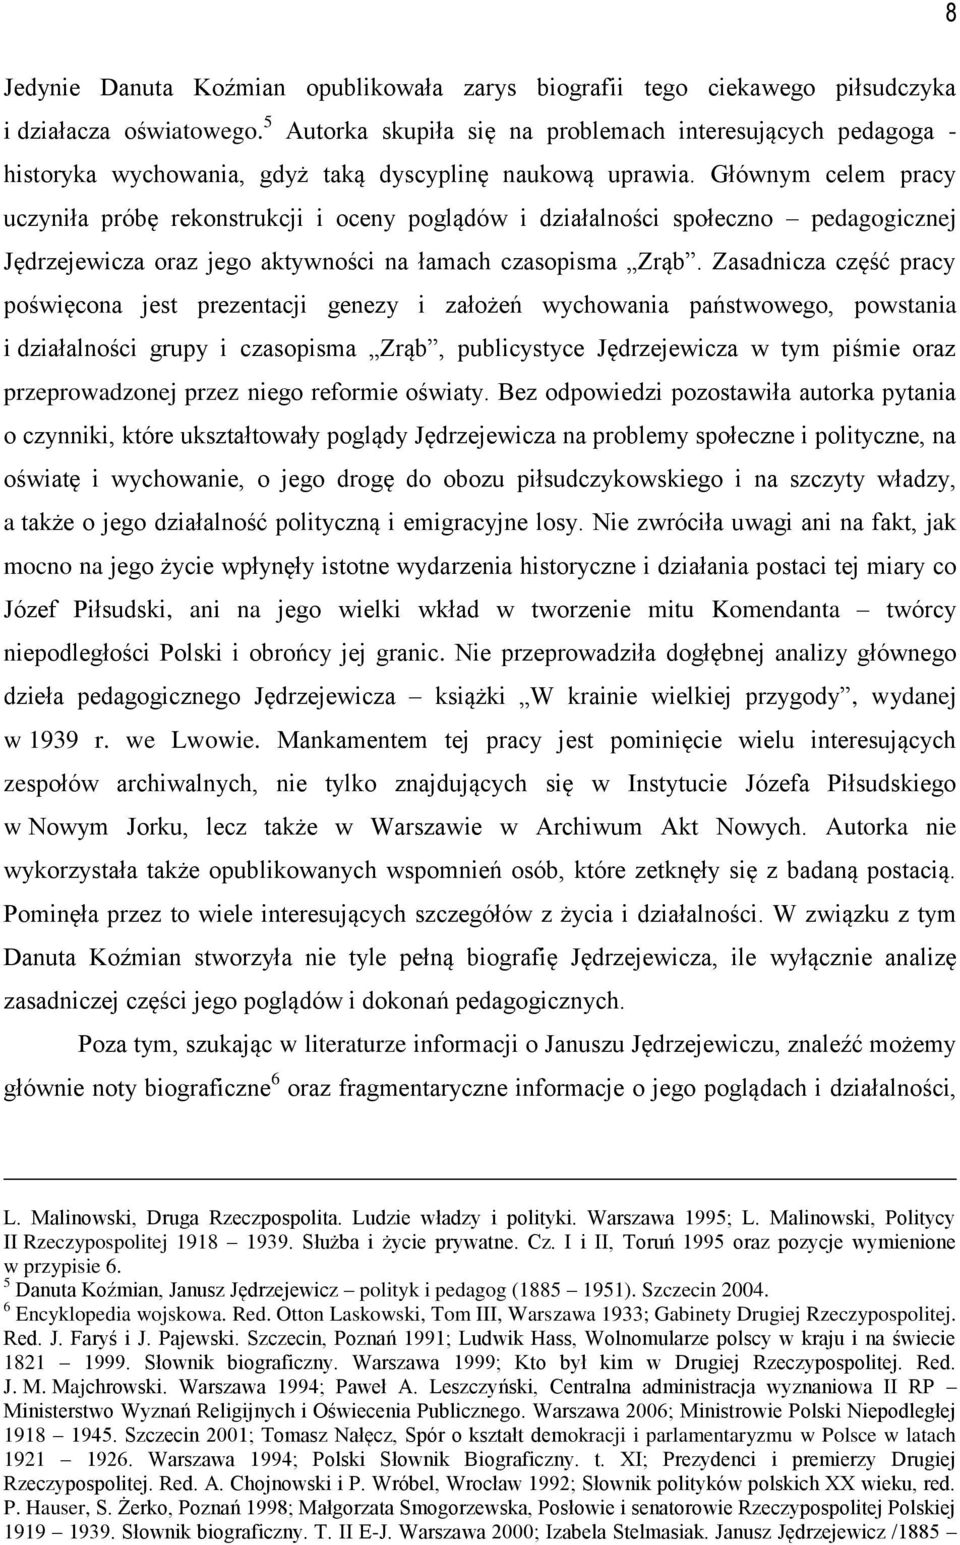 Głównym celem pracy uczyniła próbę rekonstrukcji i oceny poglądów i działalności społeczno pedagogicznej Jędrzejewicza oraz jego aktywności na łamach czasopisma Zrąb.